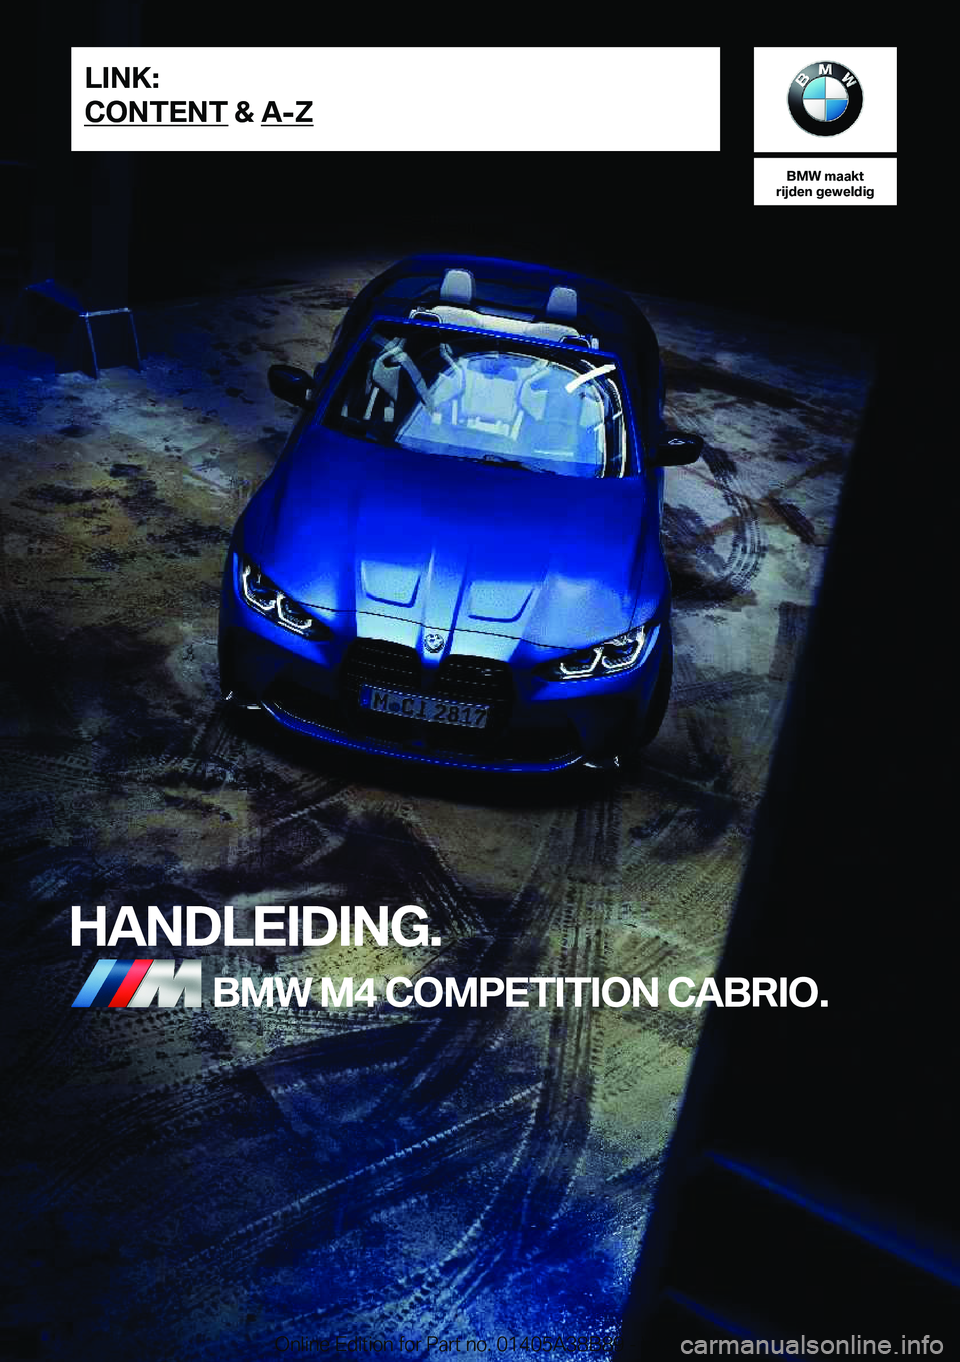 BMW M4 2022  Instructieboekjes (in Dutch) �B�M�W��m�a�a�k�t
�r�i�j�d�e�n��g�e�w�e�l�d�i�g
�H�A�N�D�L�E�I�D�I�N�G�.�B�M�W��M�4��C�O�M�P�E�T�I�T�I�O�N��C�A�B�R�I�O�.�L�I�N�K�:
�C�O�N�T�E�N�T��&��A�-�Z�O�n�l�i�n�e��E�d�i�t�i�o�n��f�o�r�